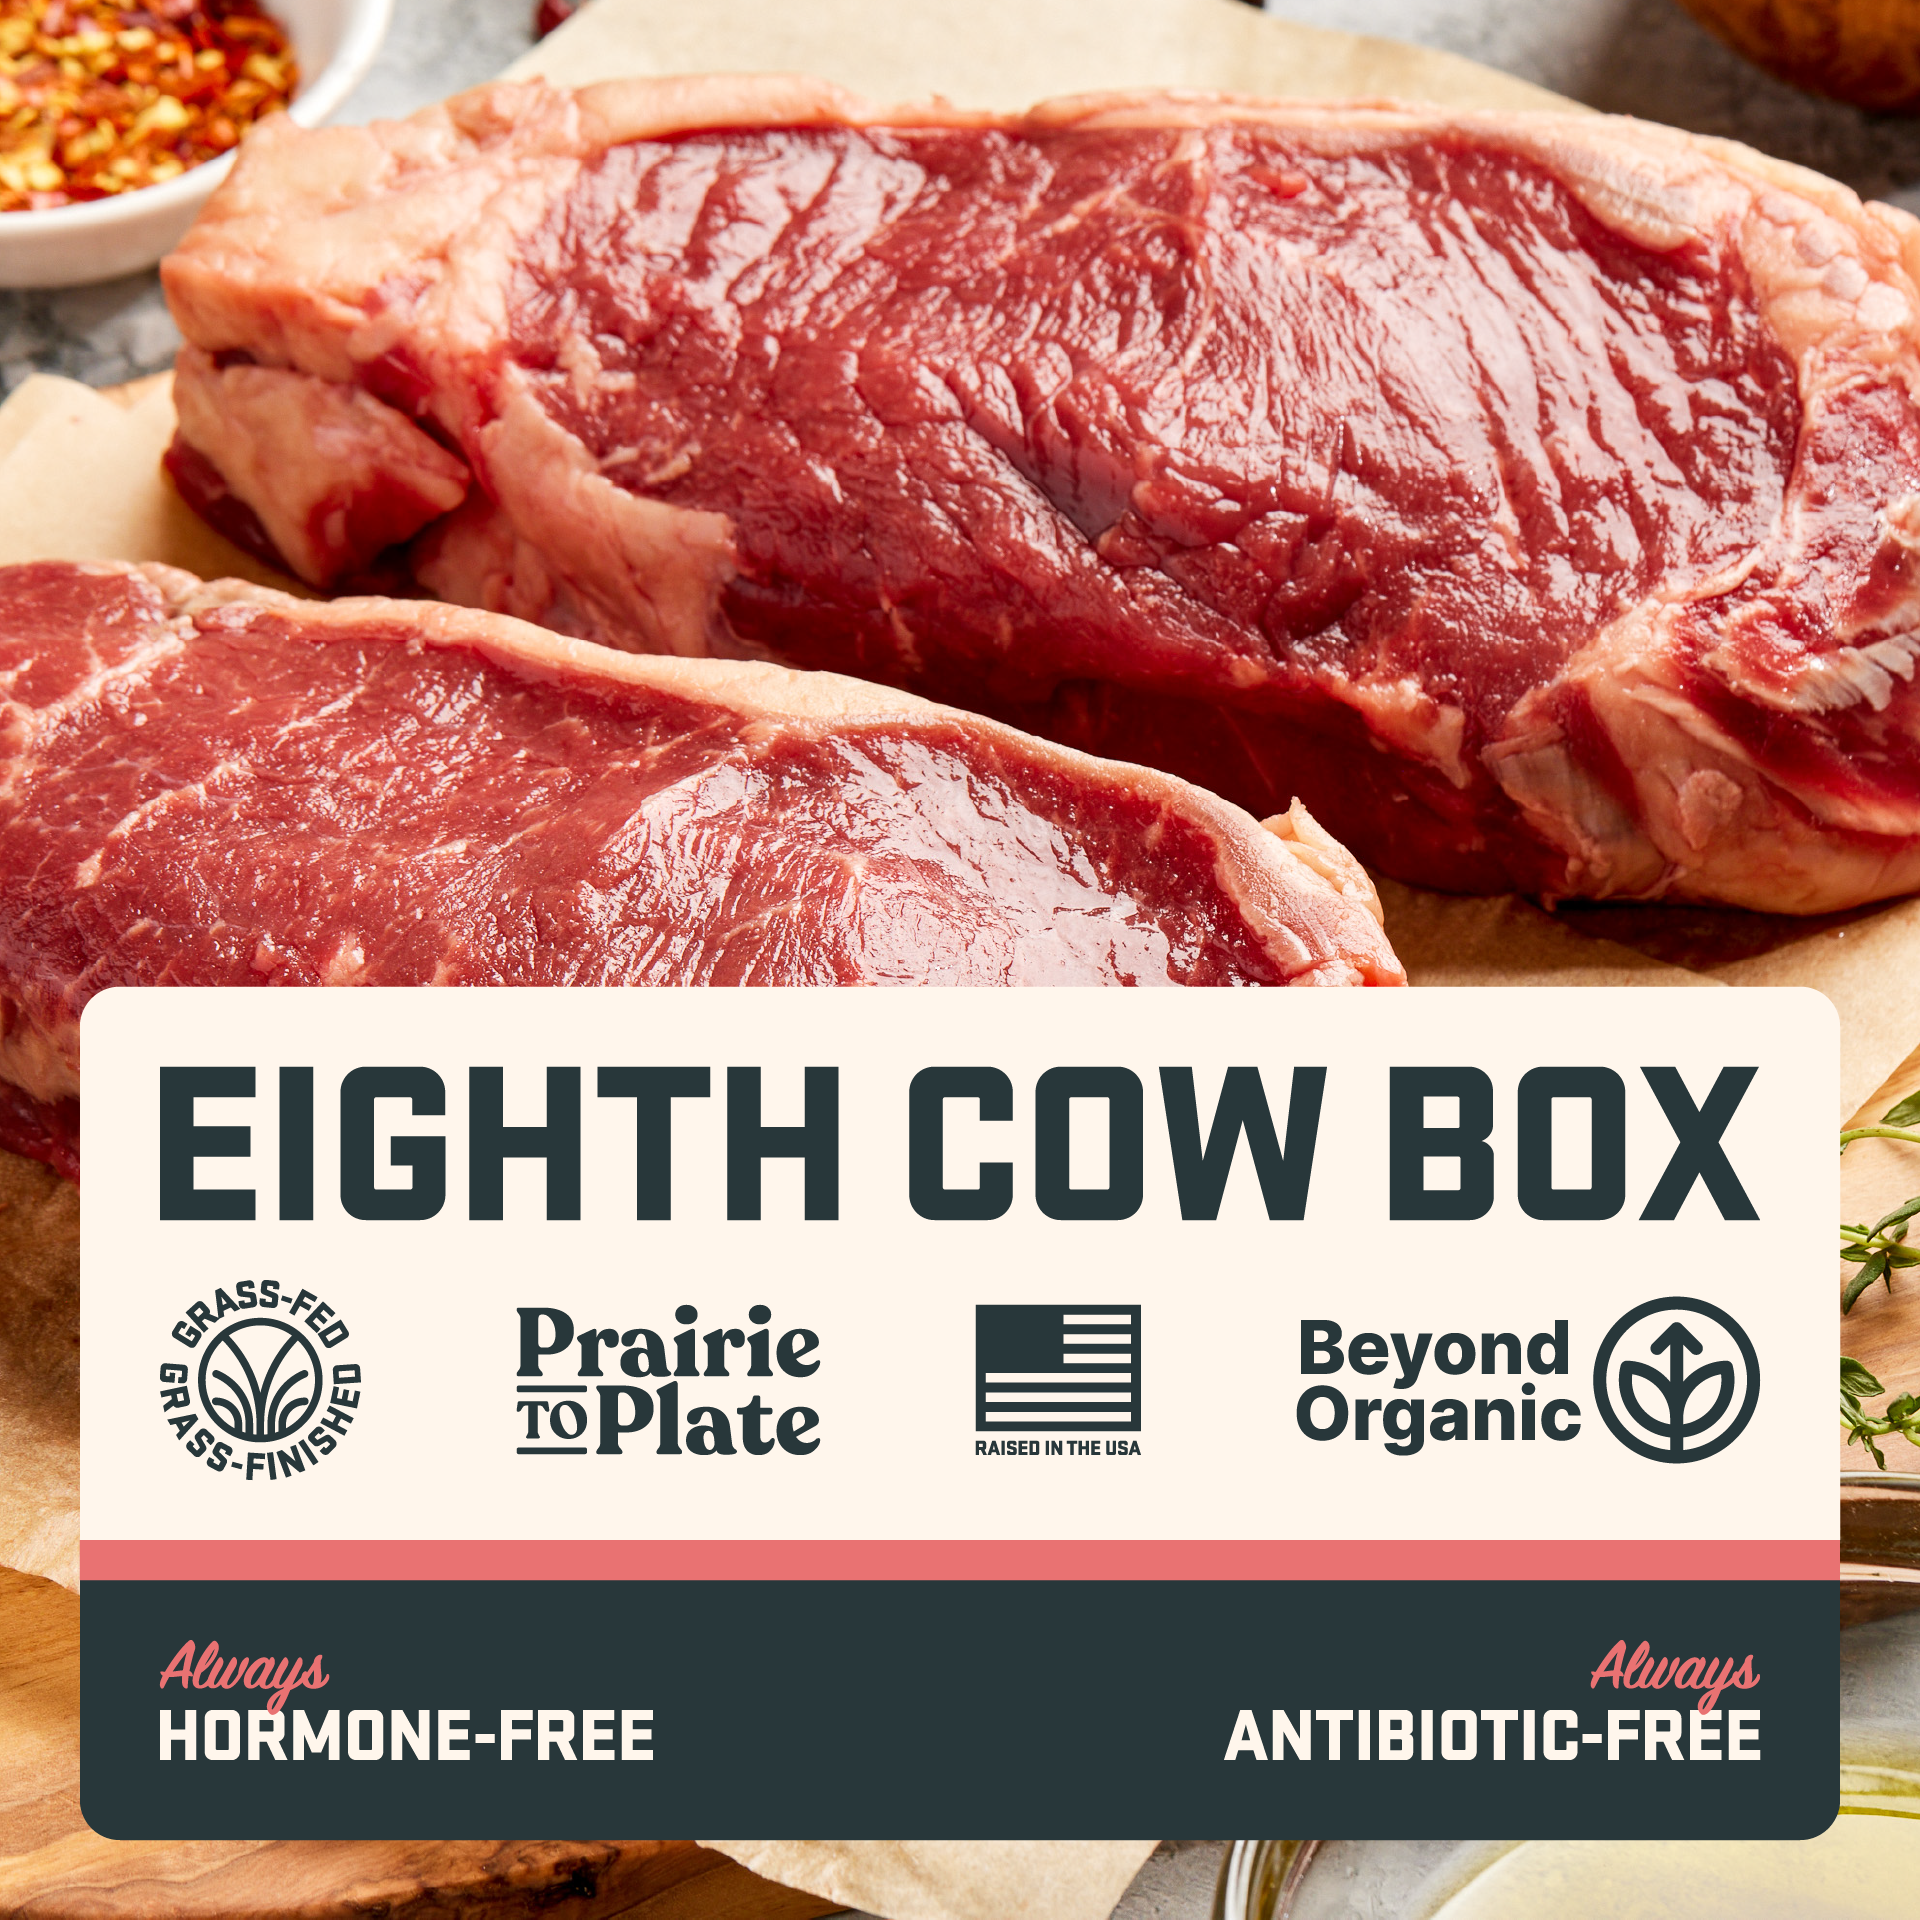 Eighth Cow Box